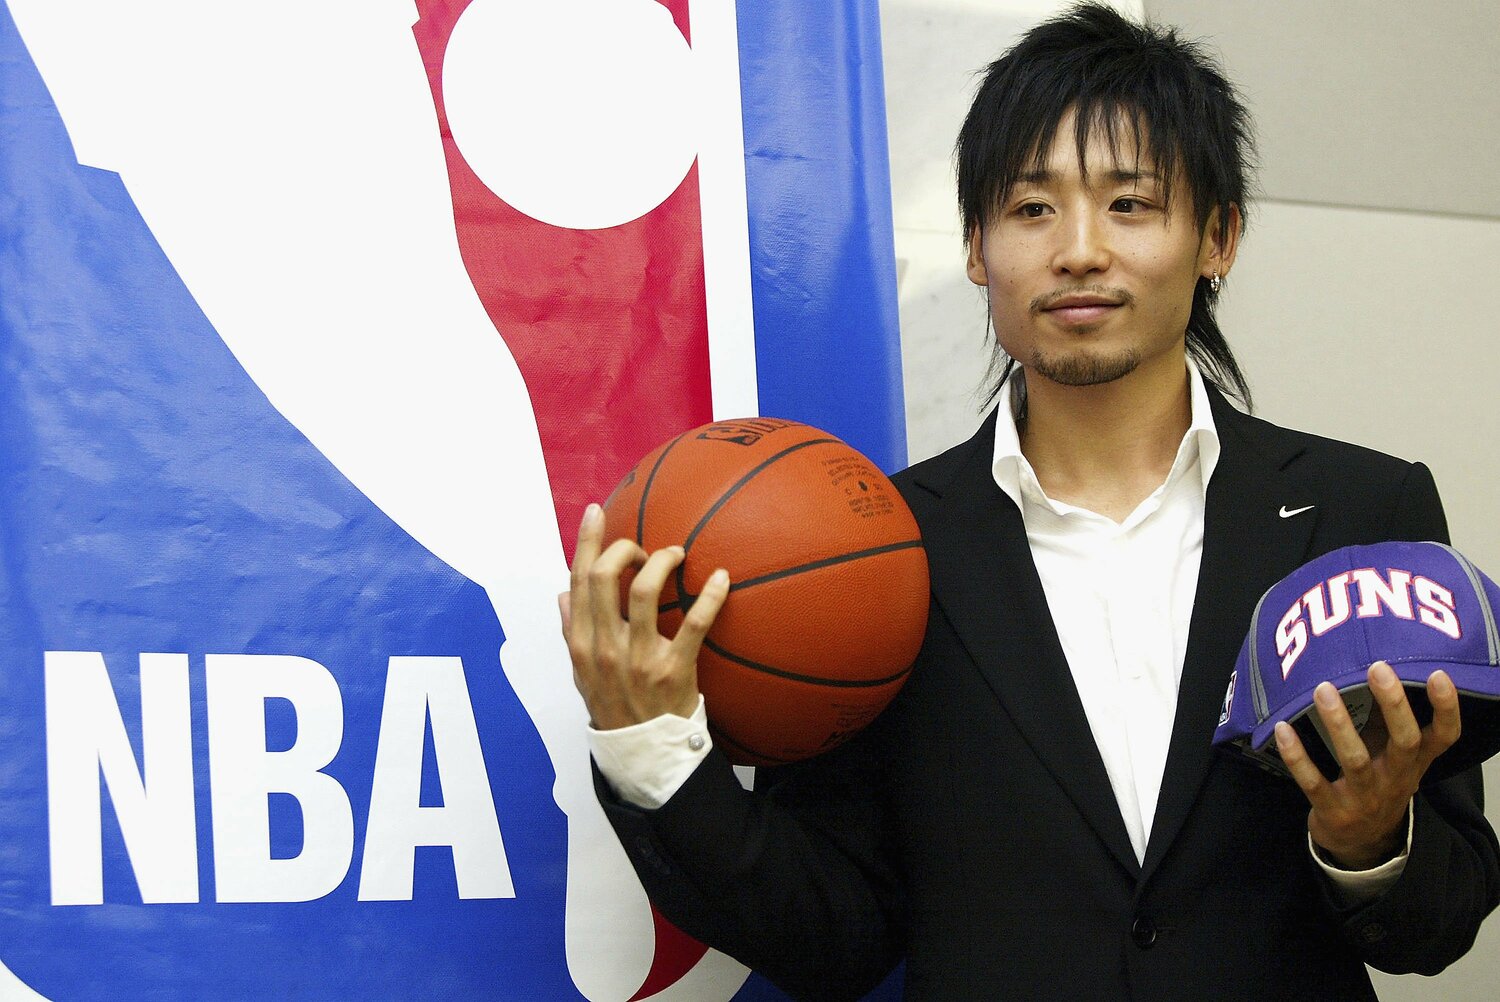 田臥勇太 サンズ ユニフォーム - バスケットボール